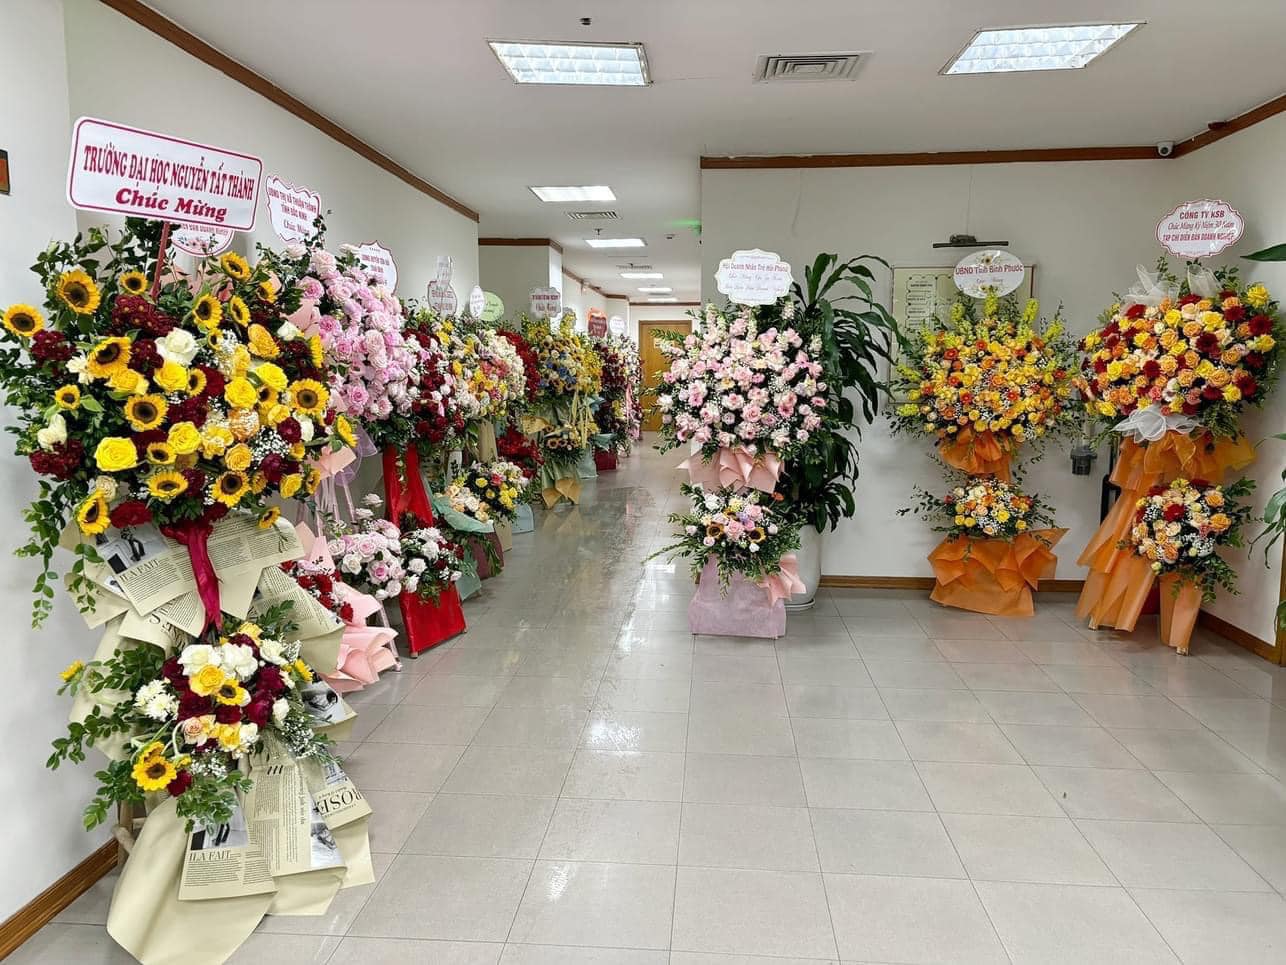 Những lãng hoa được gửi tới chúc mừng 30 năm ngày thành lập Tạp chí Diễn đàn Doanh nghiệp.